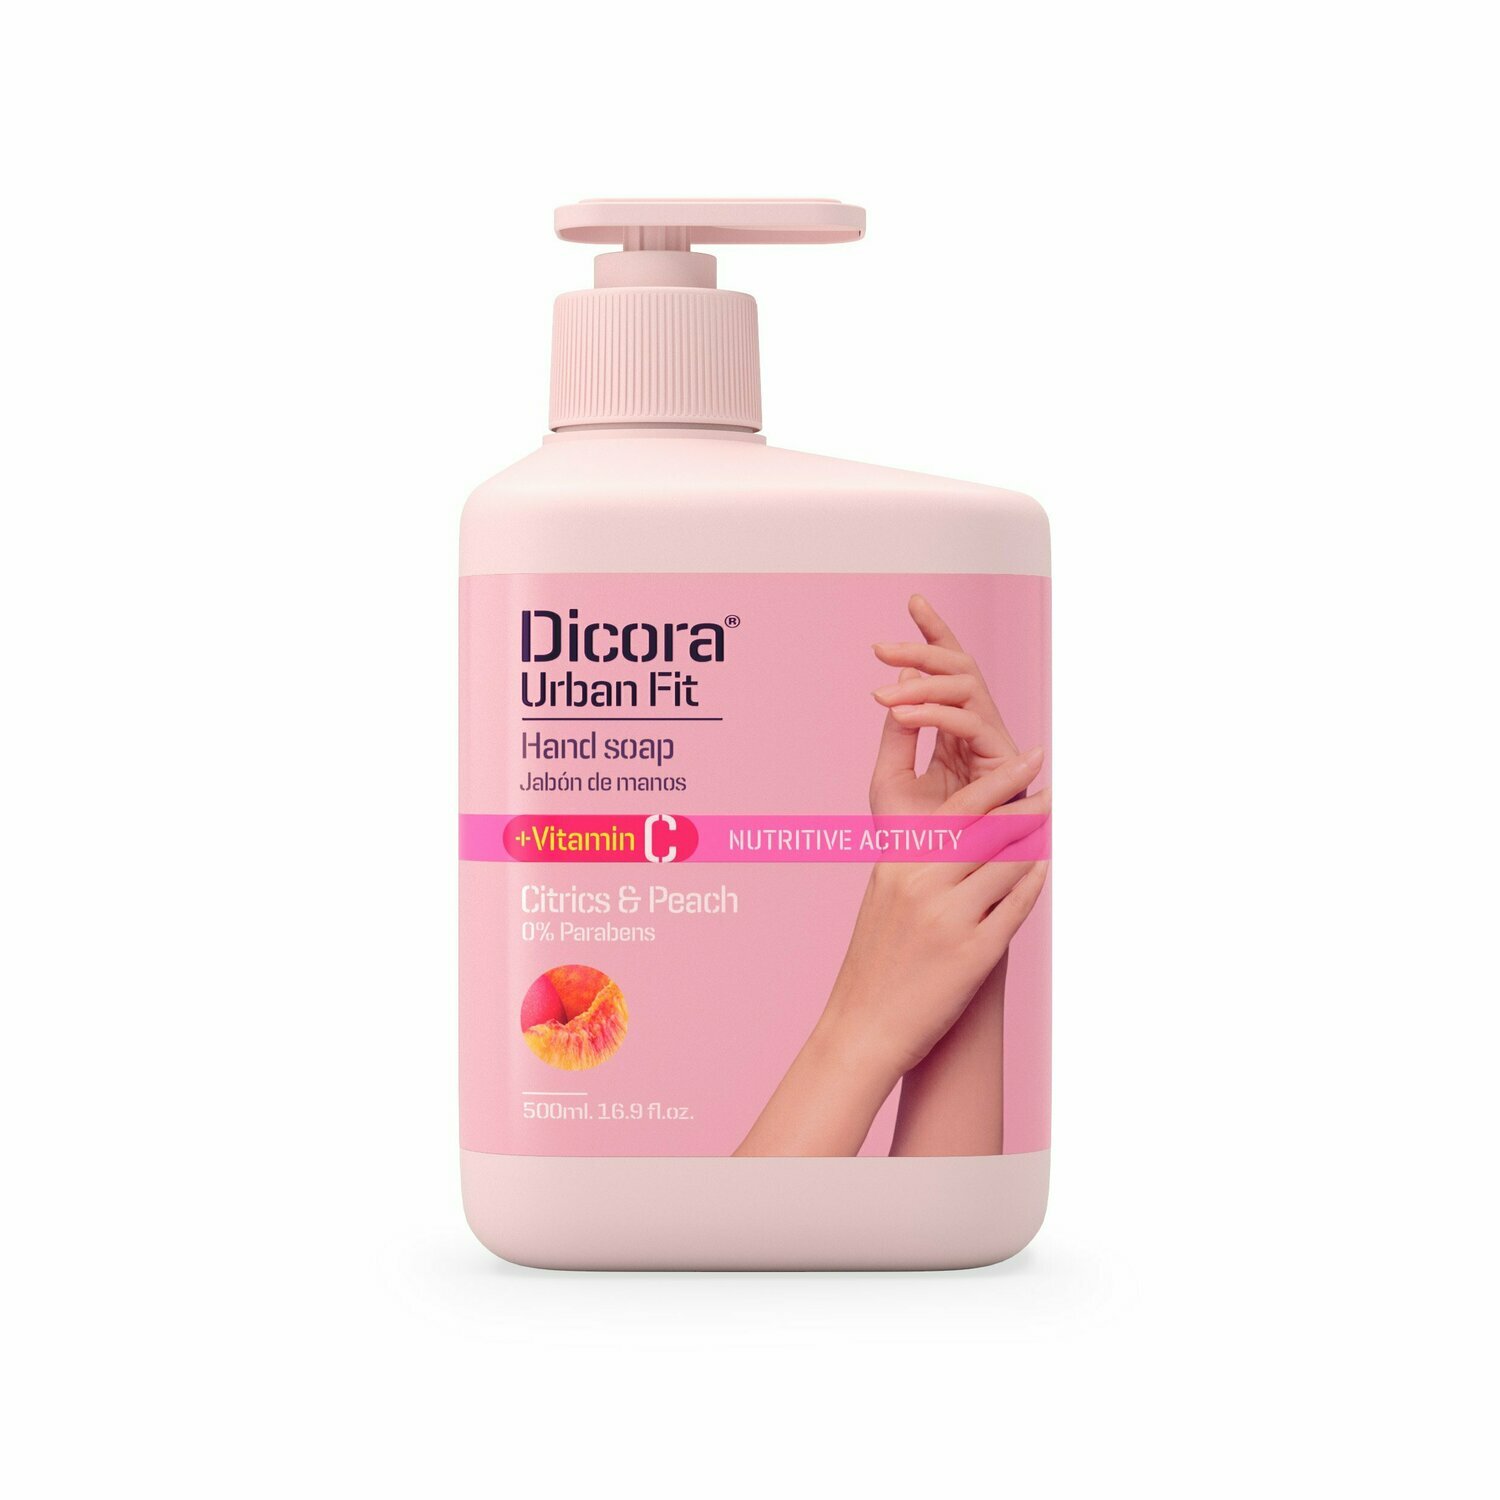 Dicora Urban Fit Hand Soap Vitamin С "Citrics & Peach" Крем-мыло для рук "Цитрус и Персик"